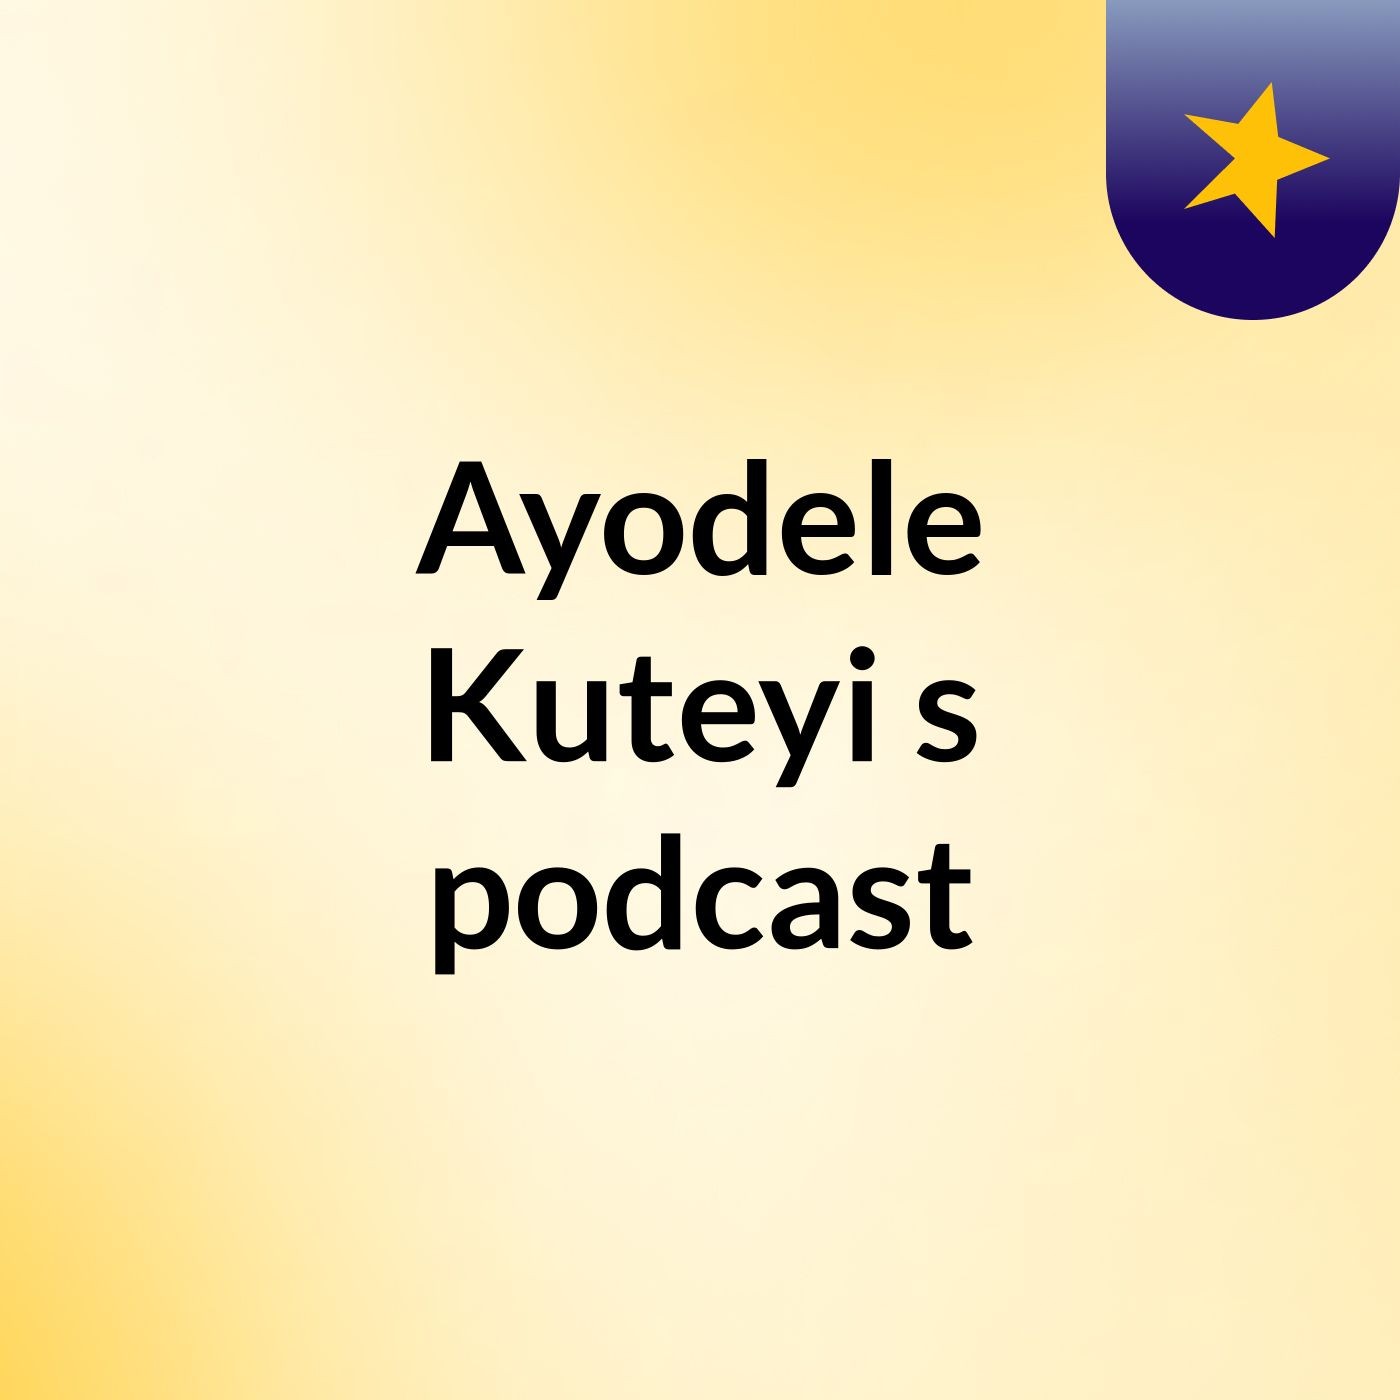 Episode 3 - Ayodele Kuteyi's podcast